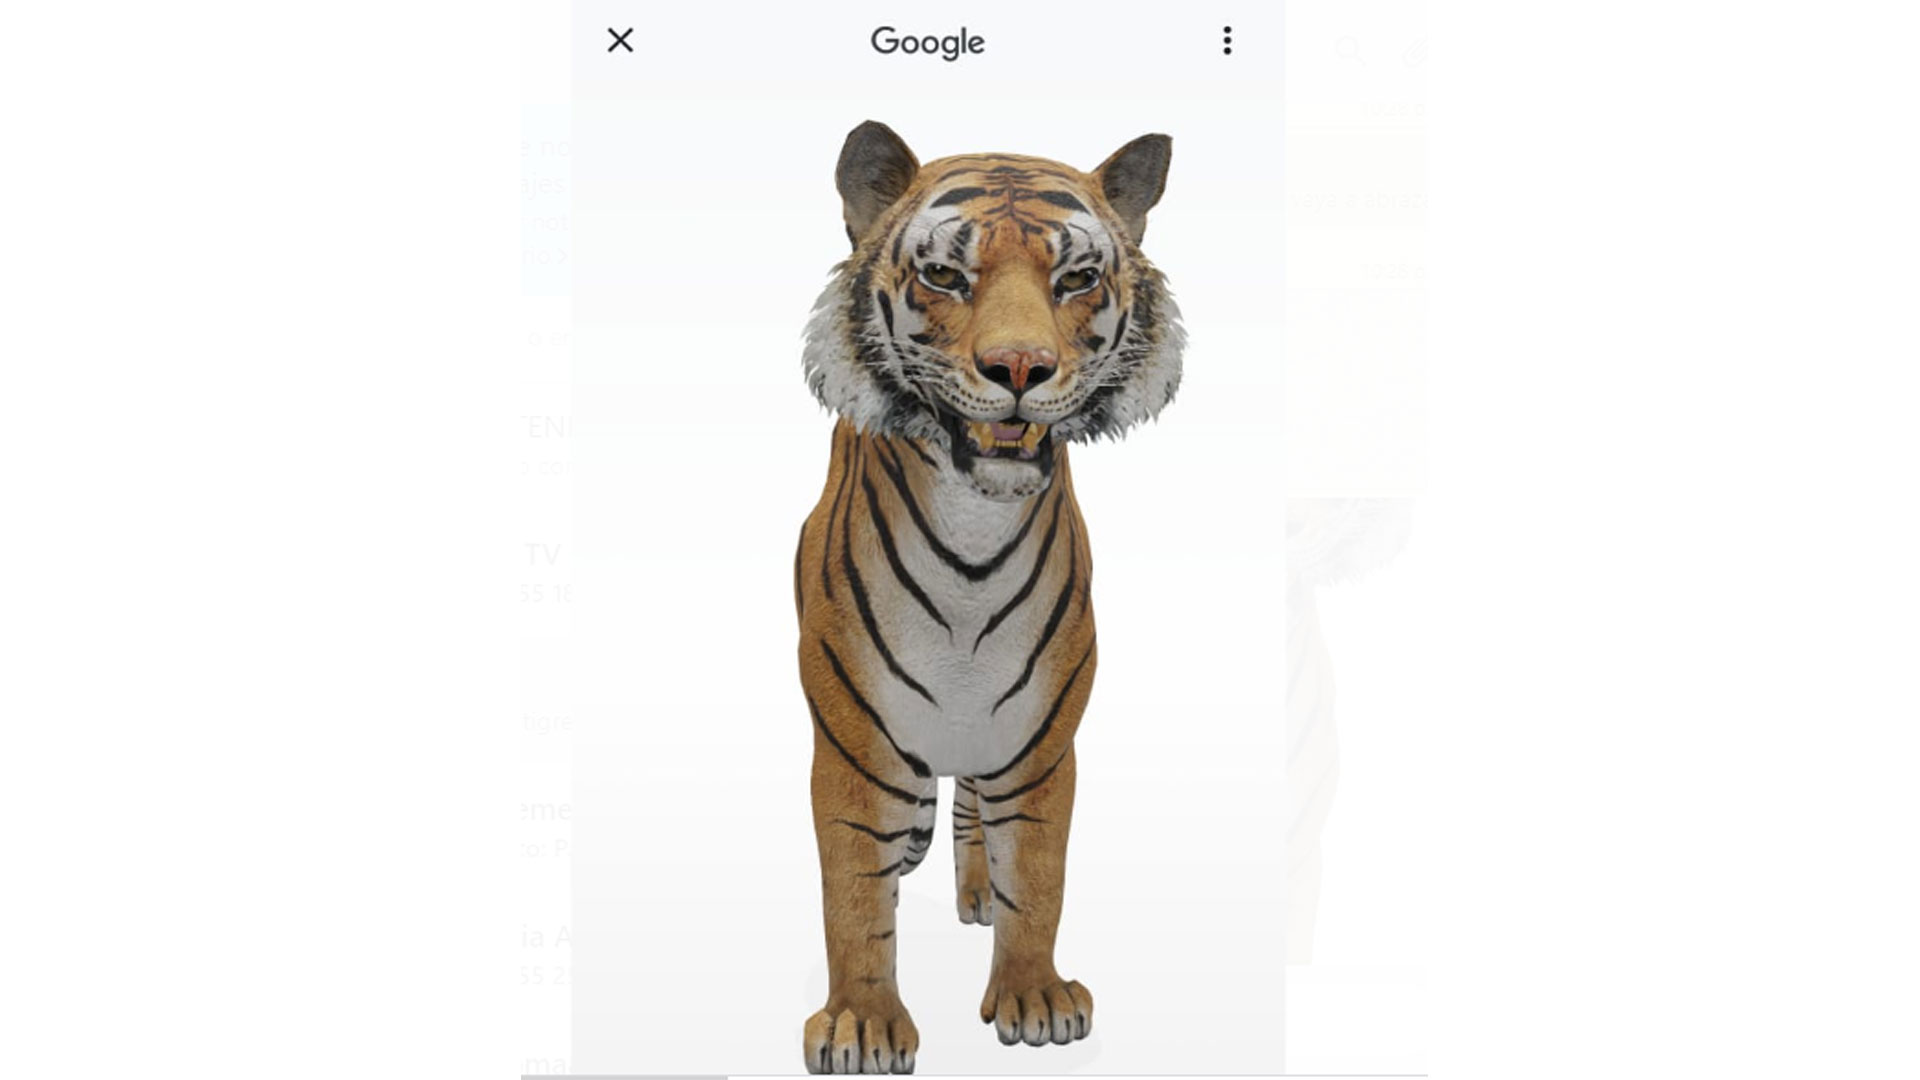 Ahora puedes tener un tigre 3d gracias a Google - Conocimiento Libre